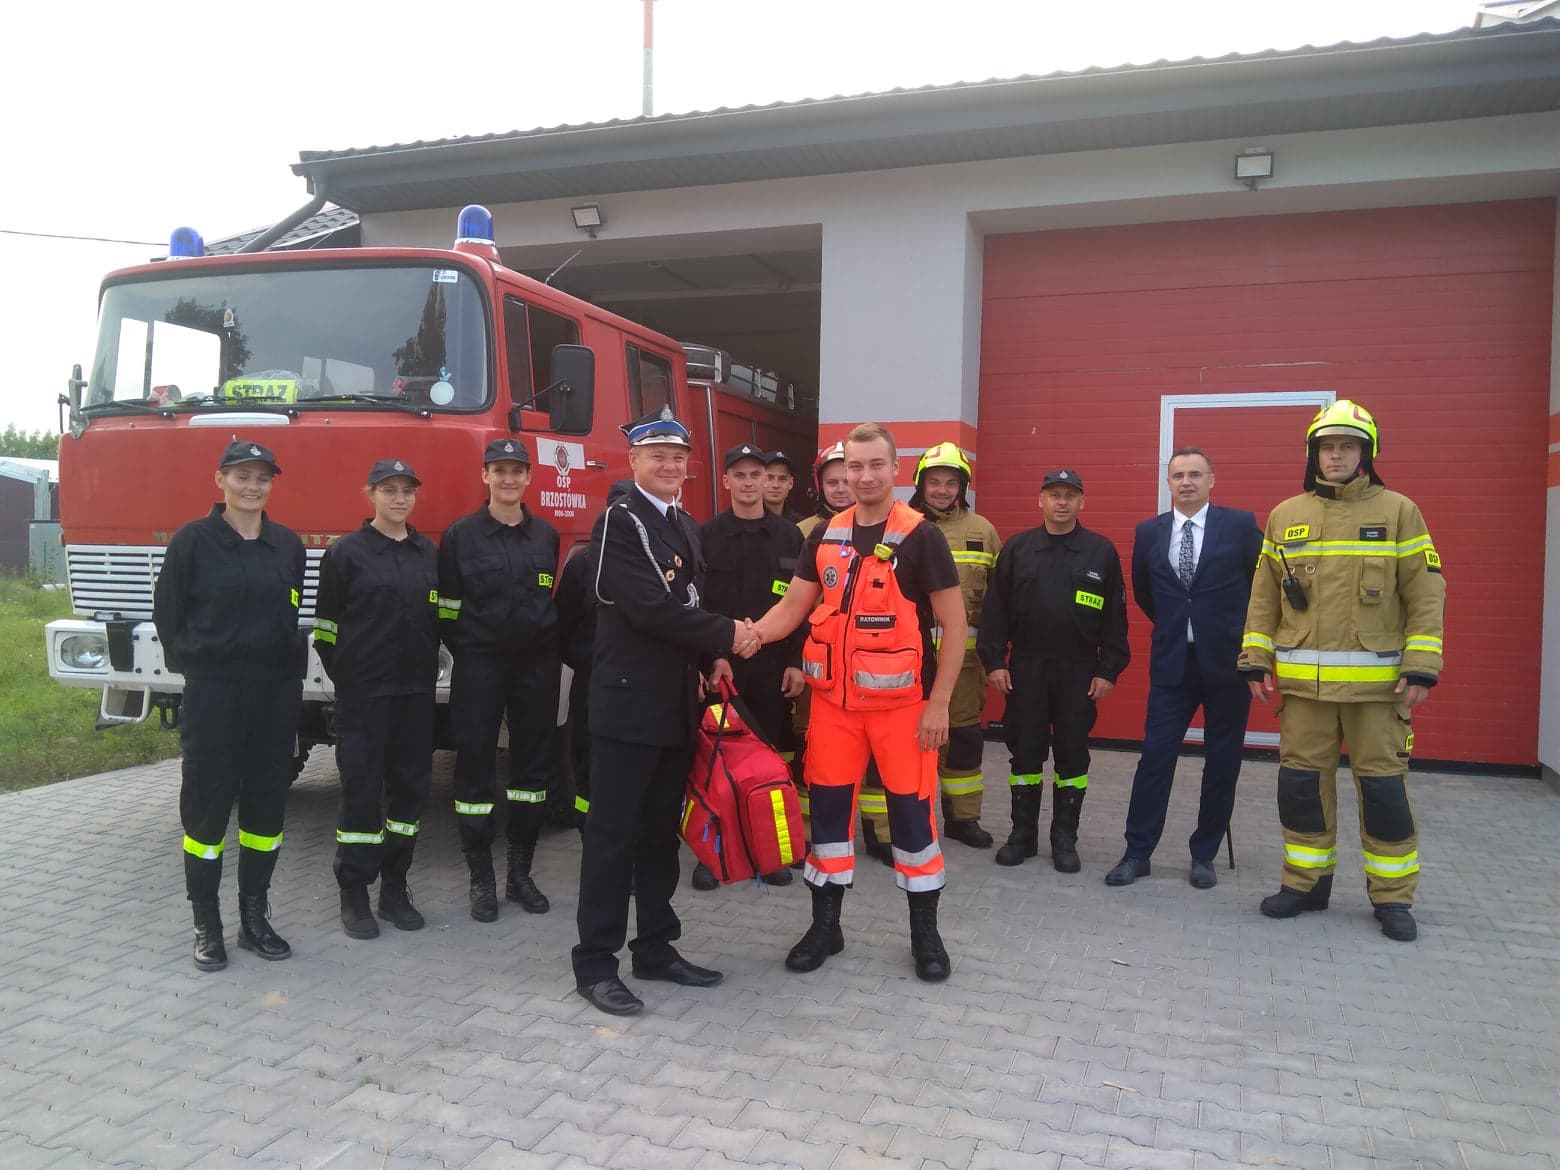 Strażacy z Brzostówki otrzymali zestaw ratownictwa przedlekarskiego (zdjęcia)